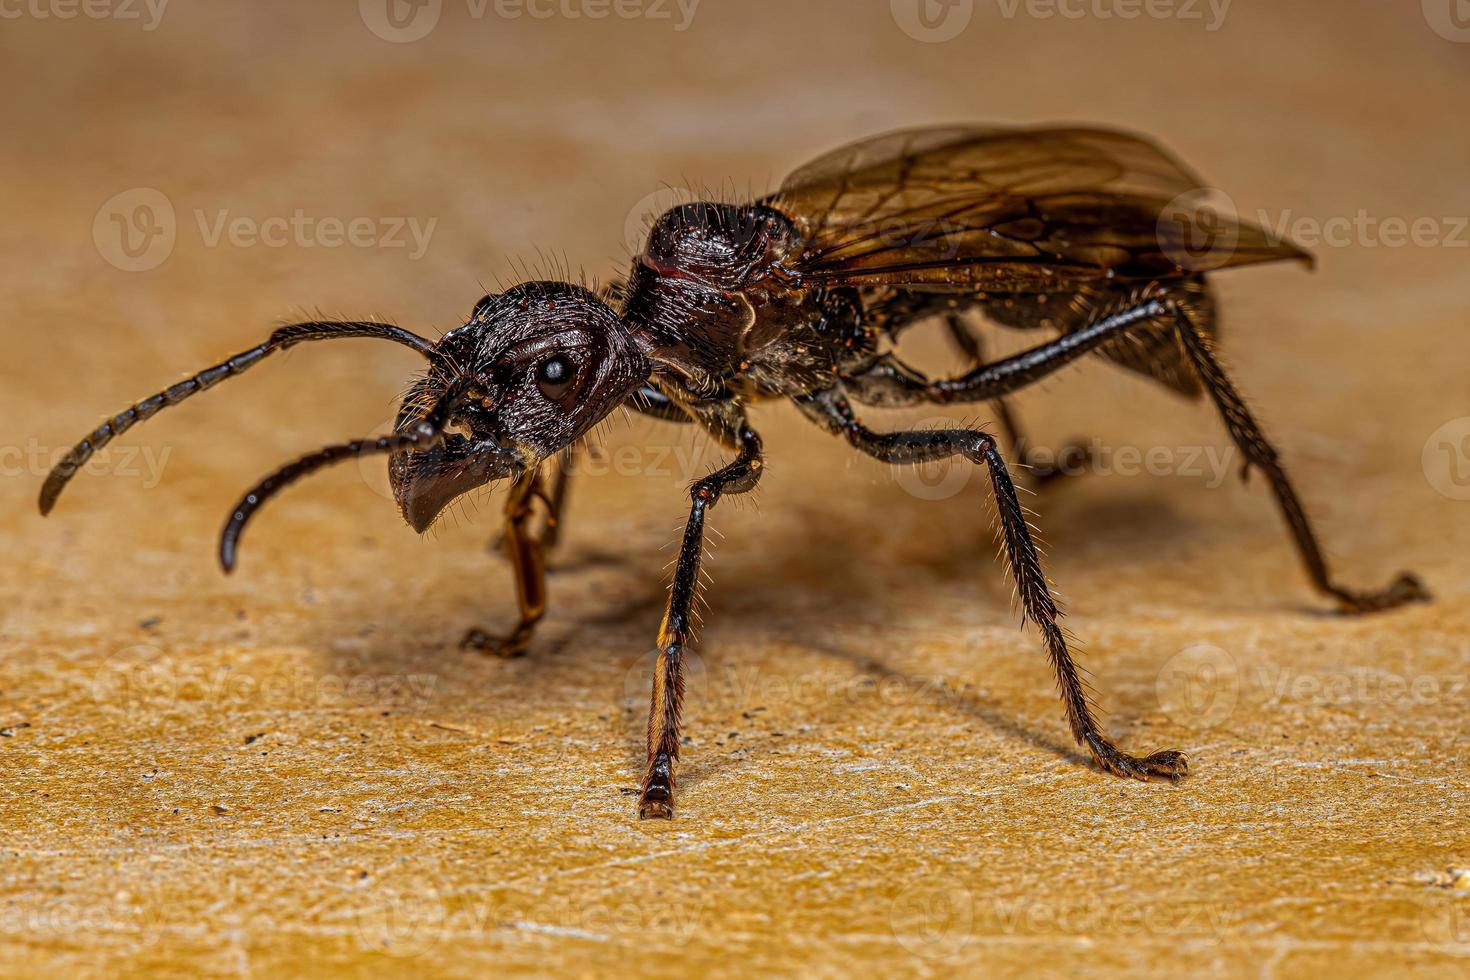 Adult Bullet Ant Queen photo